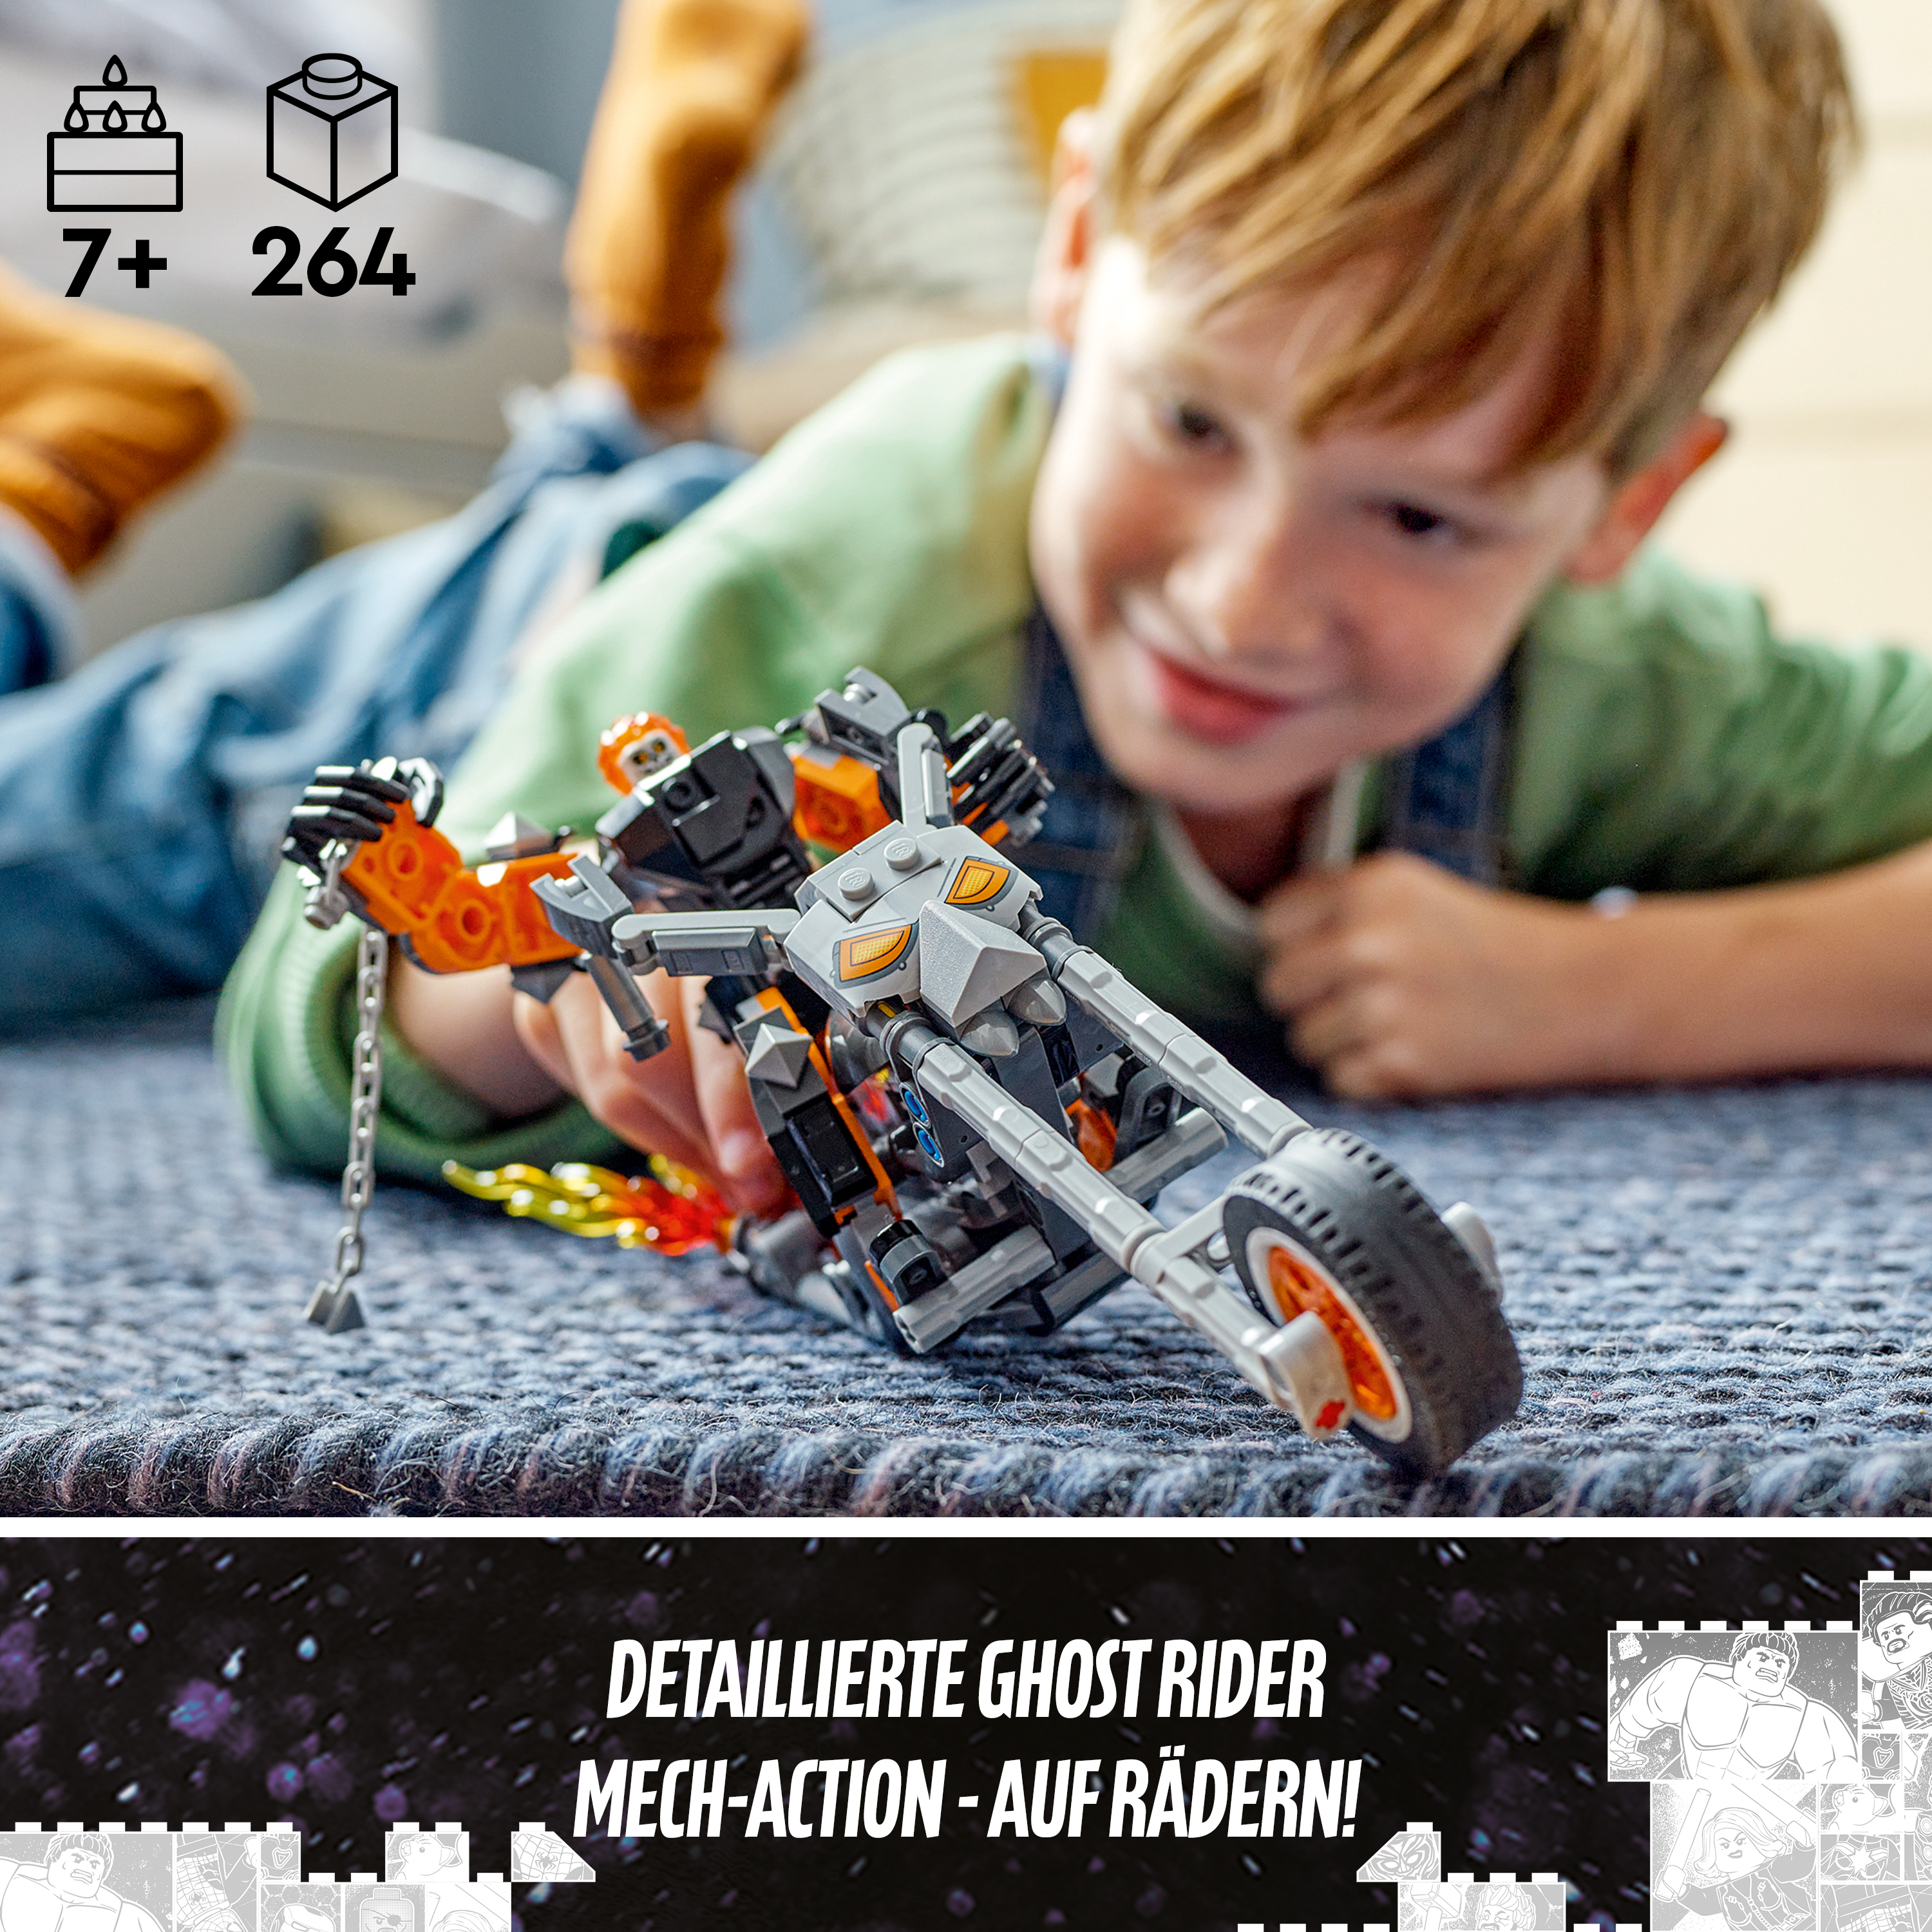 Rider & Bike Marvel mit Ghost Bausatz, Mehrfarbig 76245 LEGO Mech